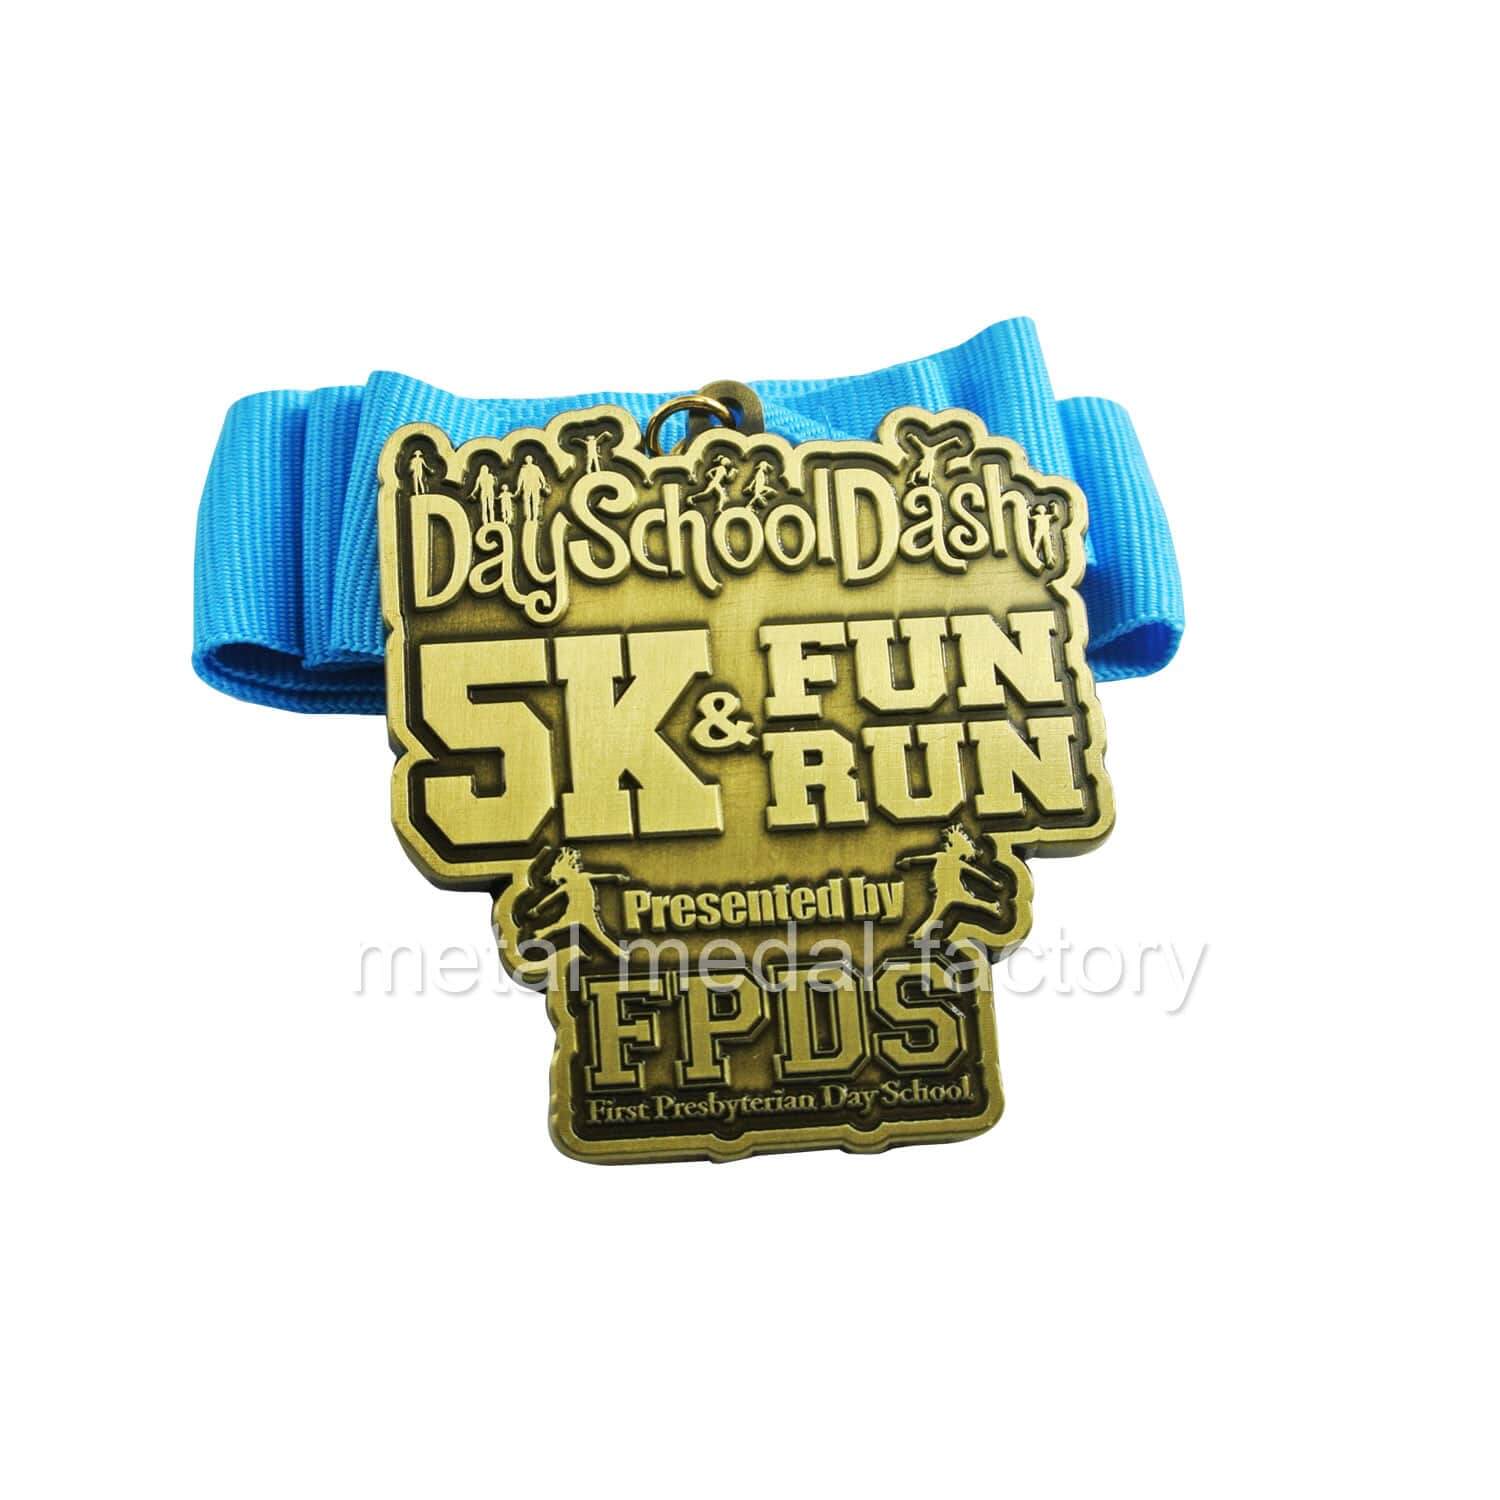 School 5k marathon medal for runners